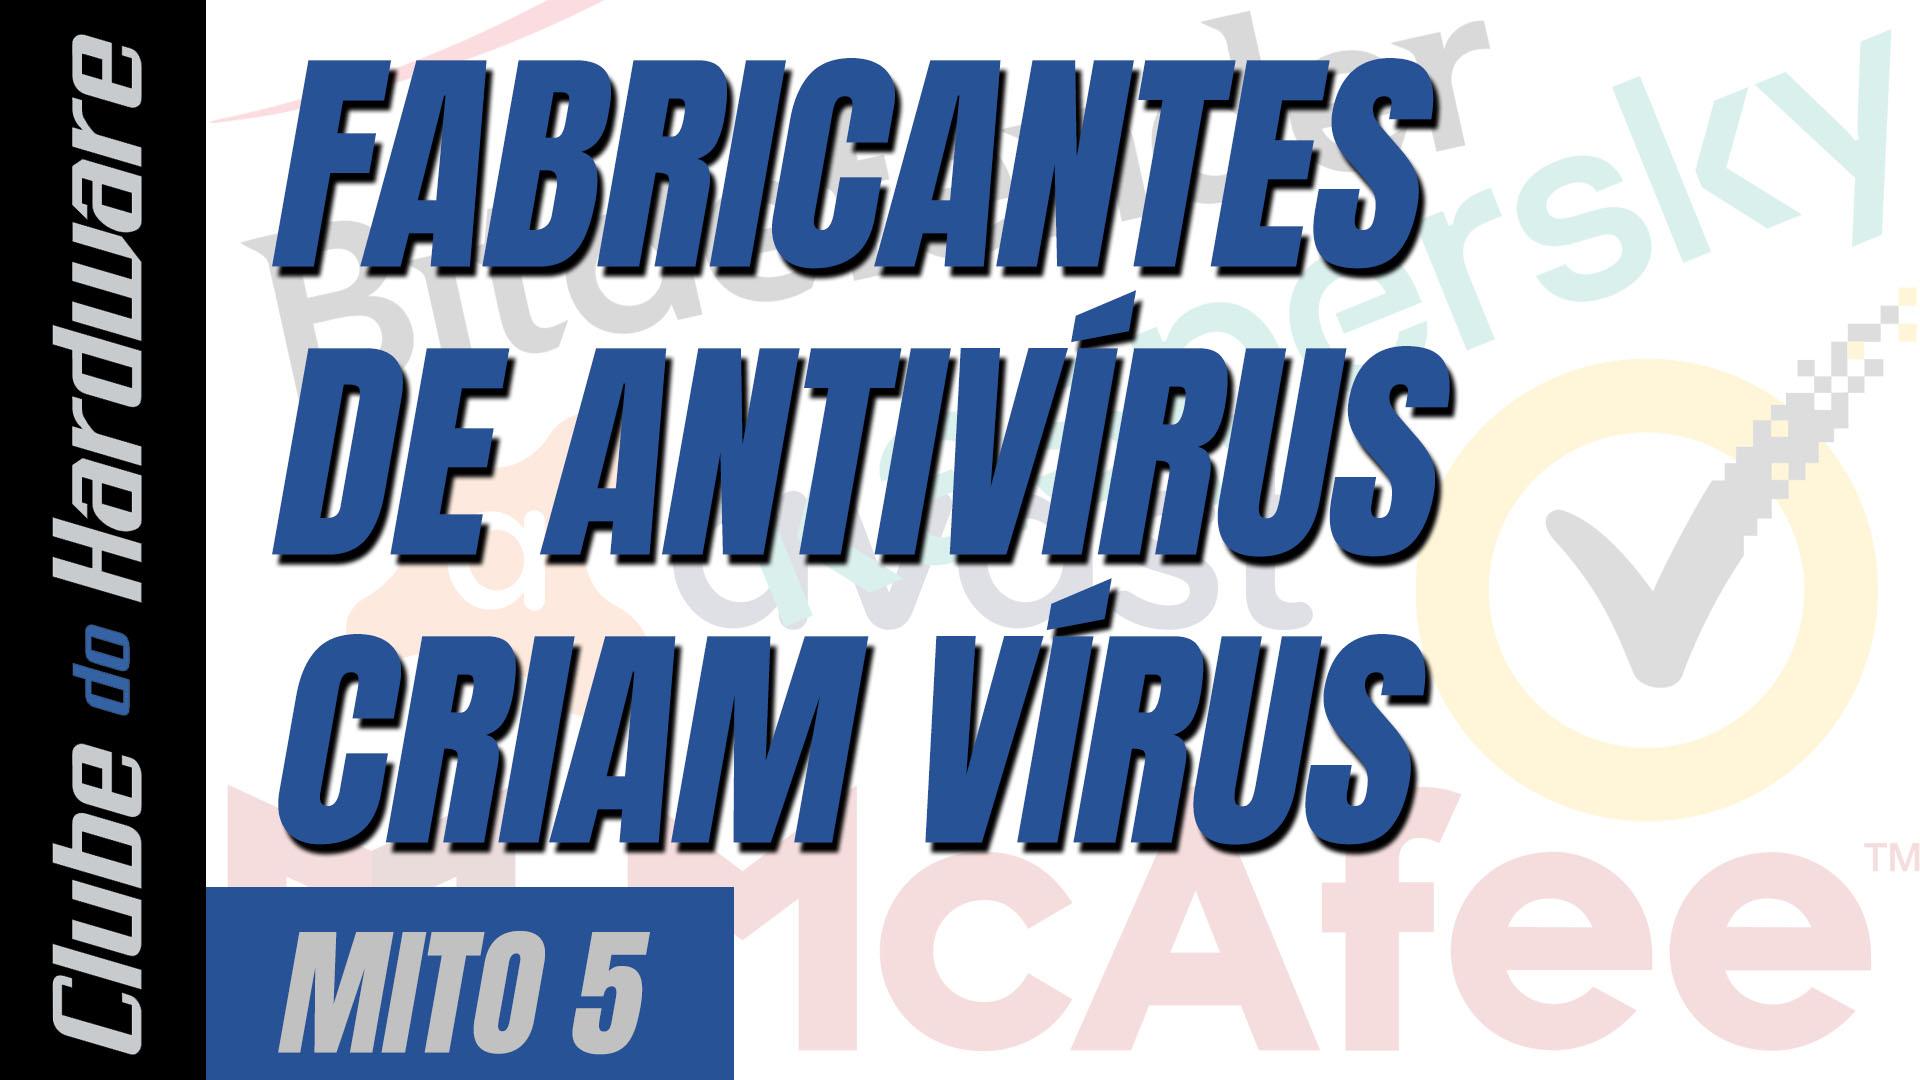 Mitos do hardware #05: fabricantes de antivírus criam vírus